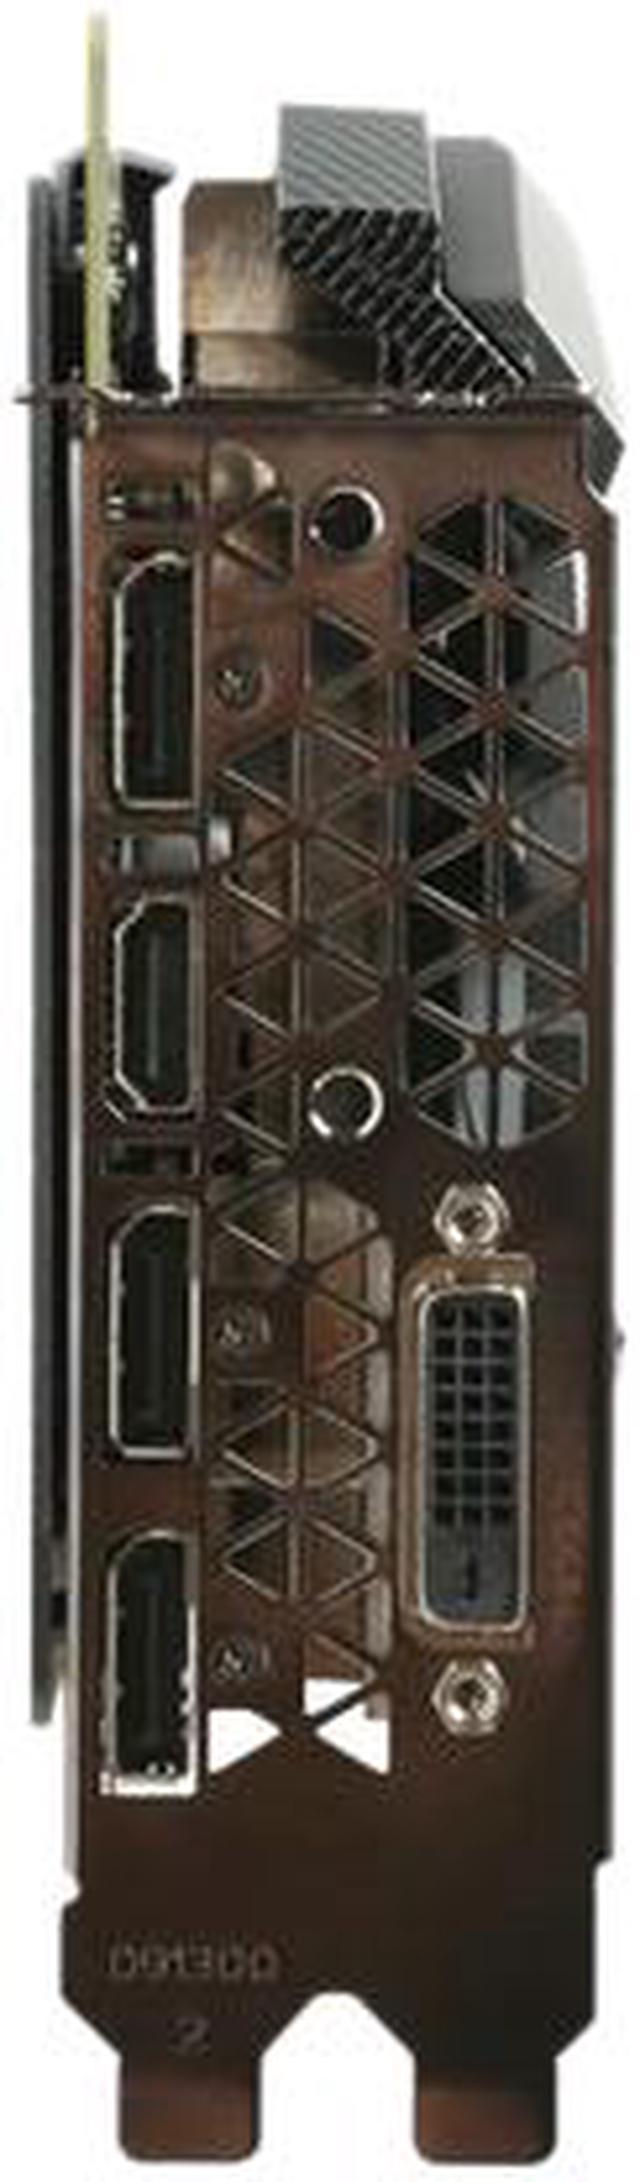 ZOTAC GeForce GTX 1070 AMP! Edition, ZT-P10700C-10P, 8GB GDDR5